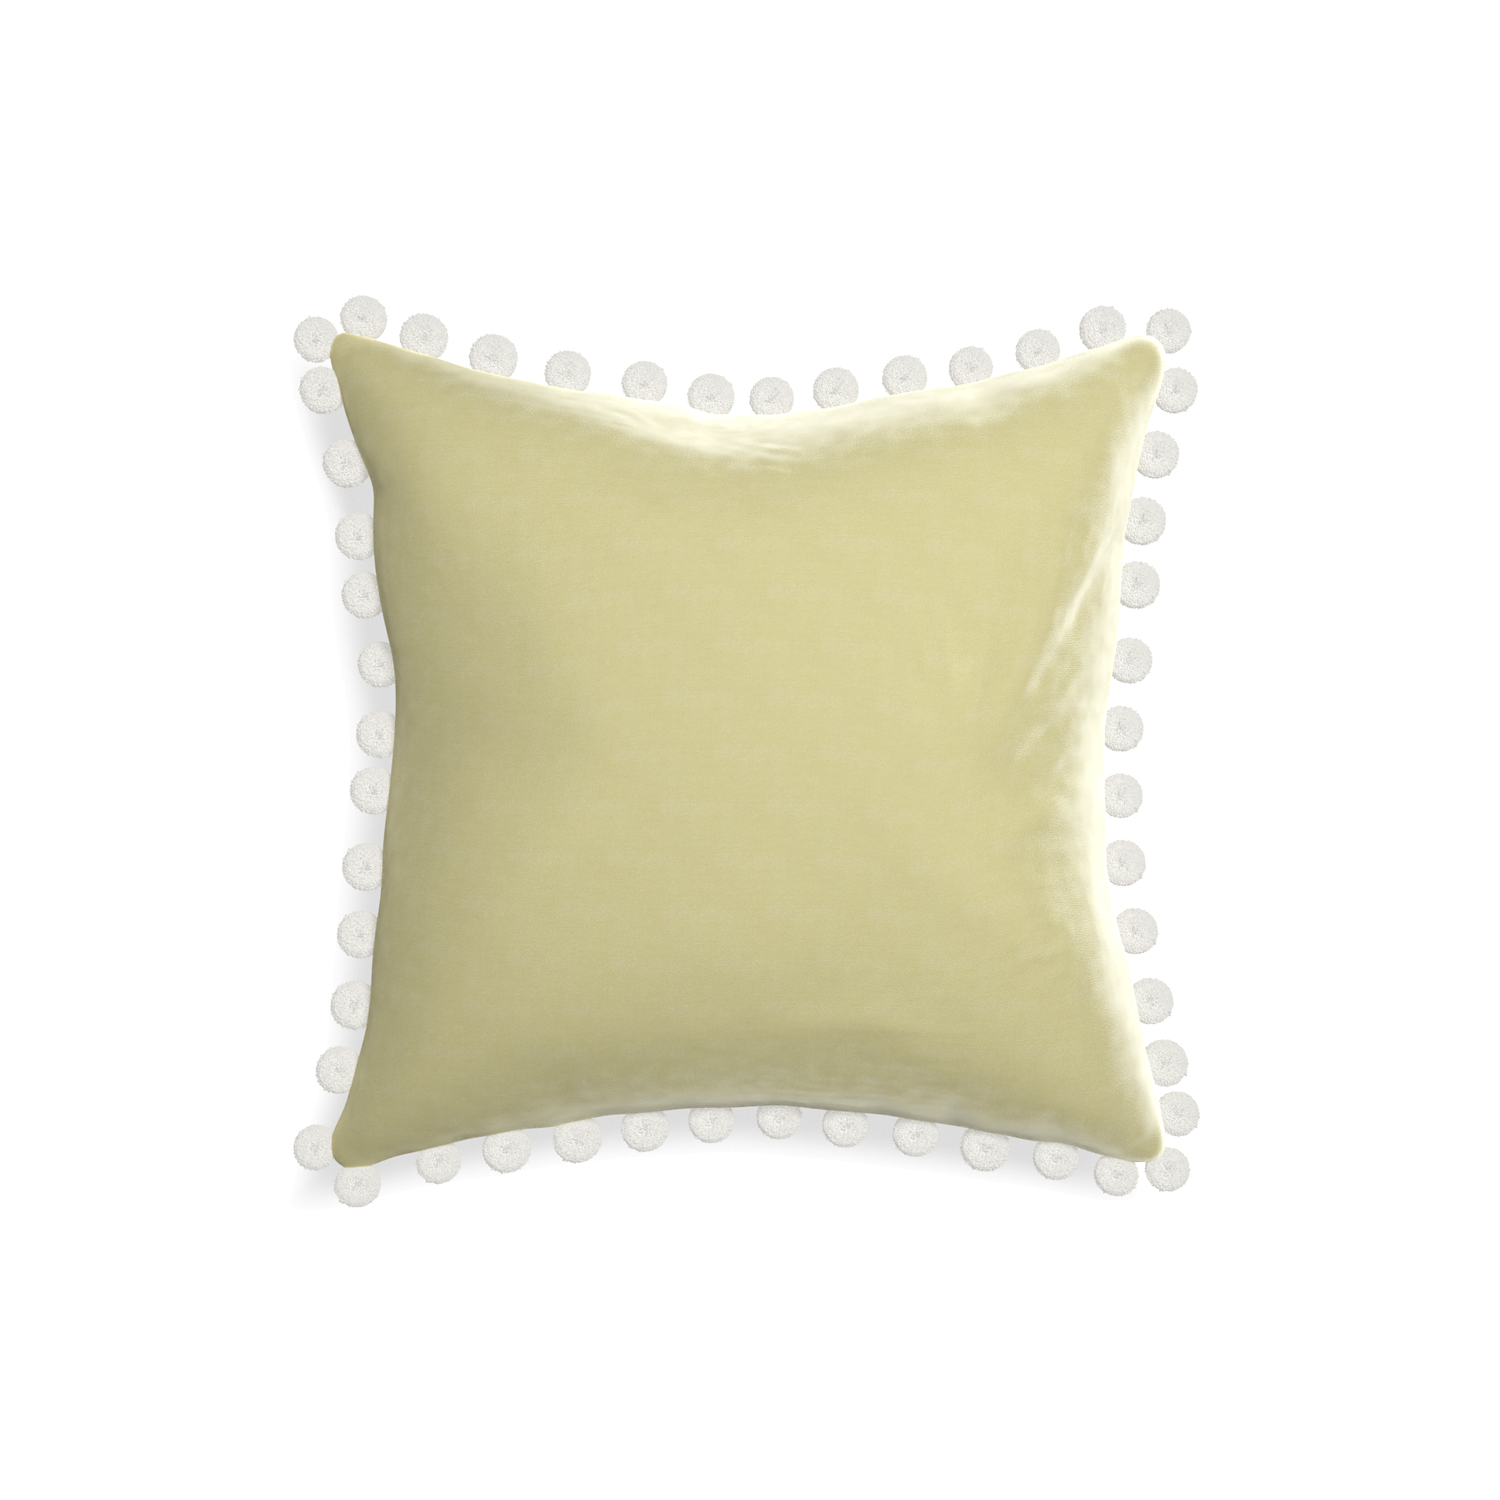 18-square pear velvet custom pillow with snow pom pom on white background